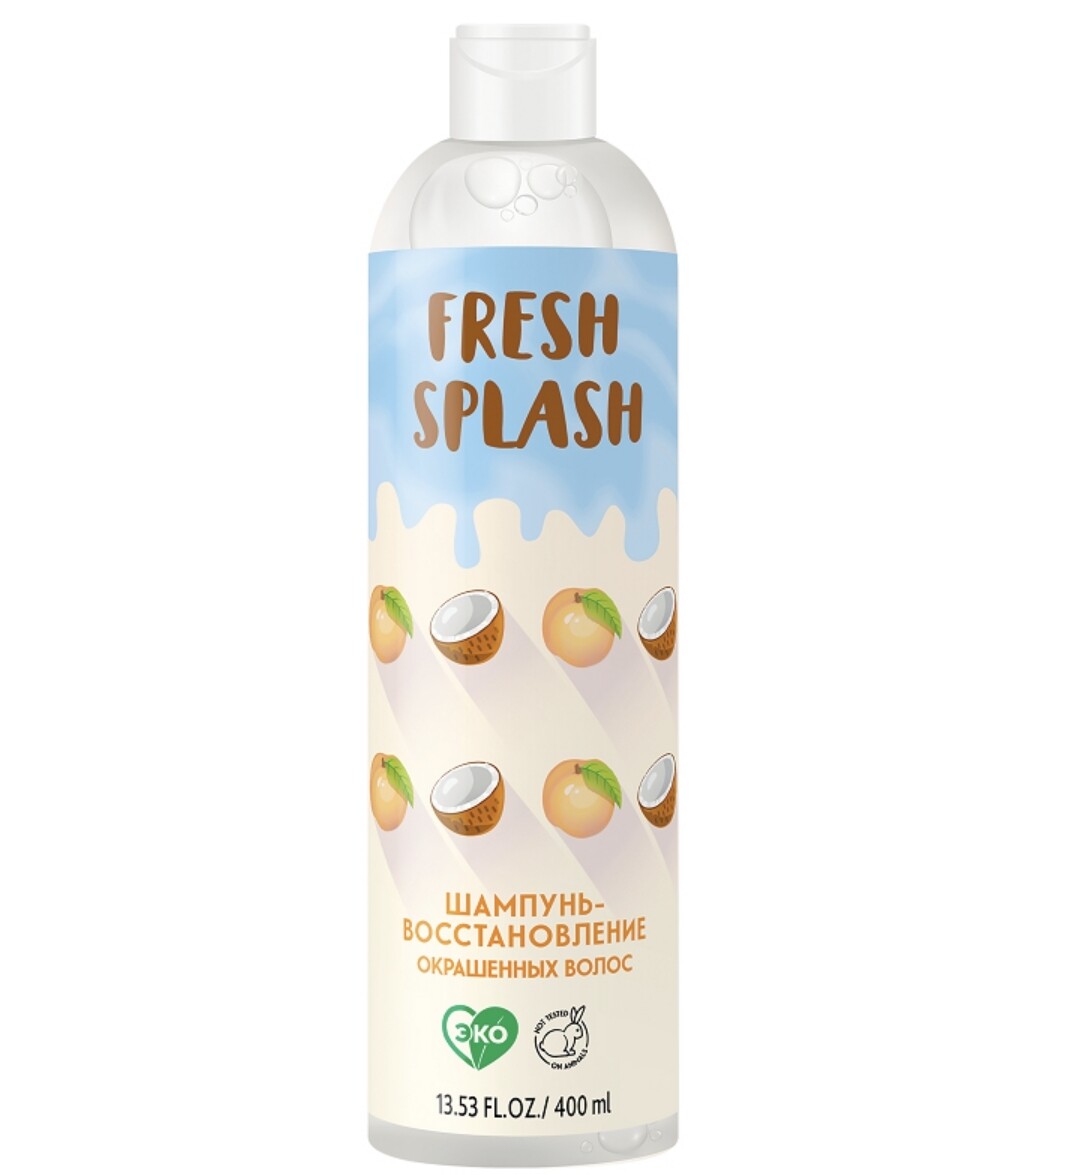 Fresh splash шампунь-восстановление окрашенных волос,400 мл шампунь для окрашенных волос 250мл